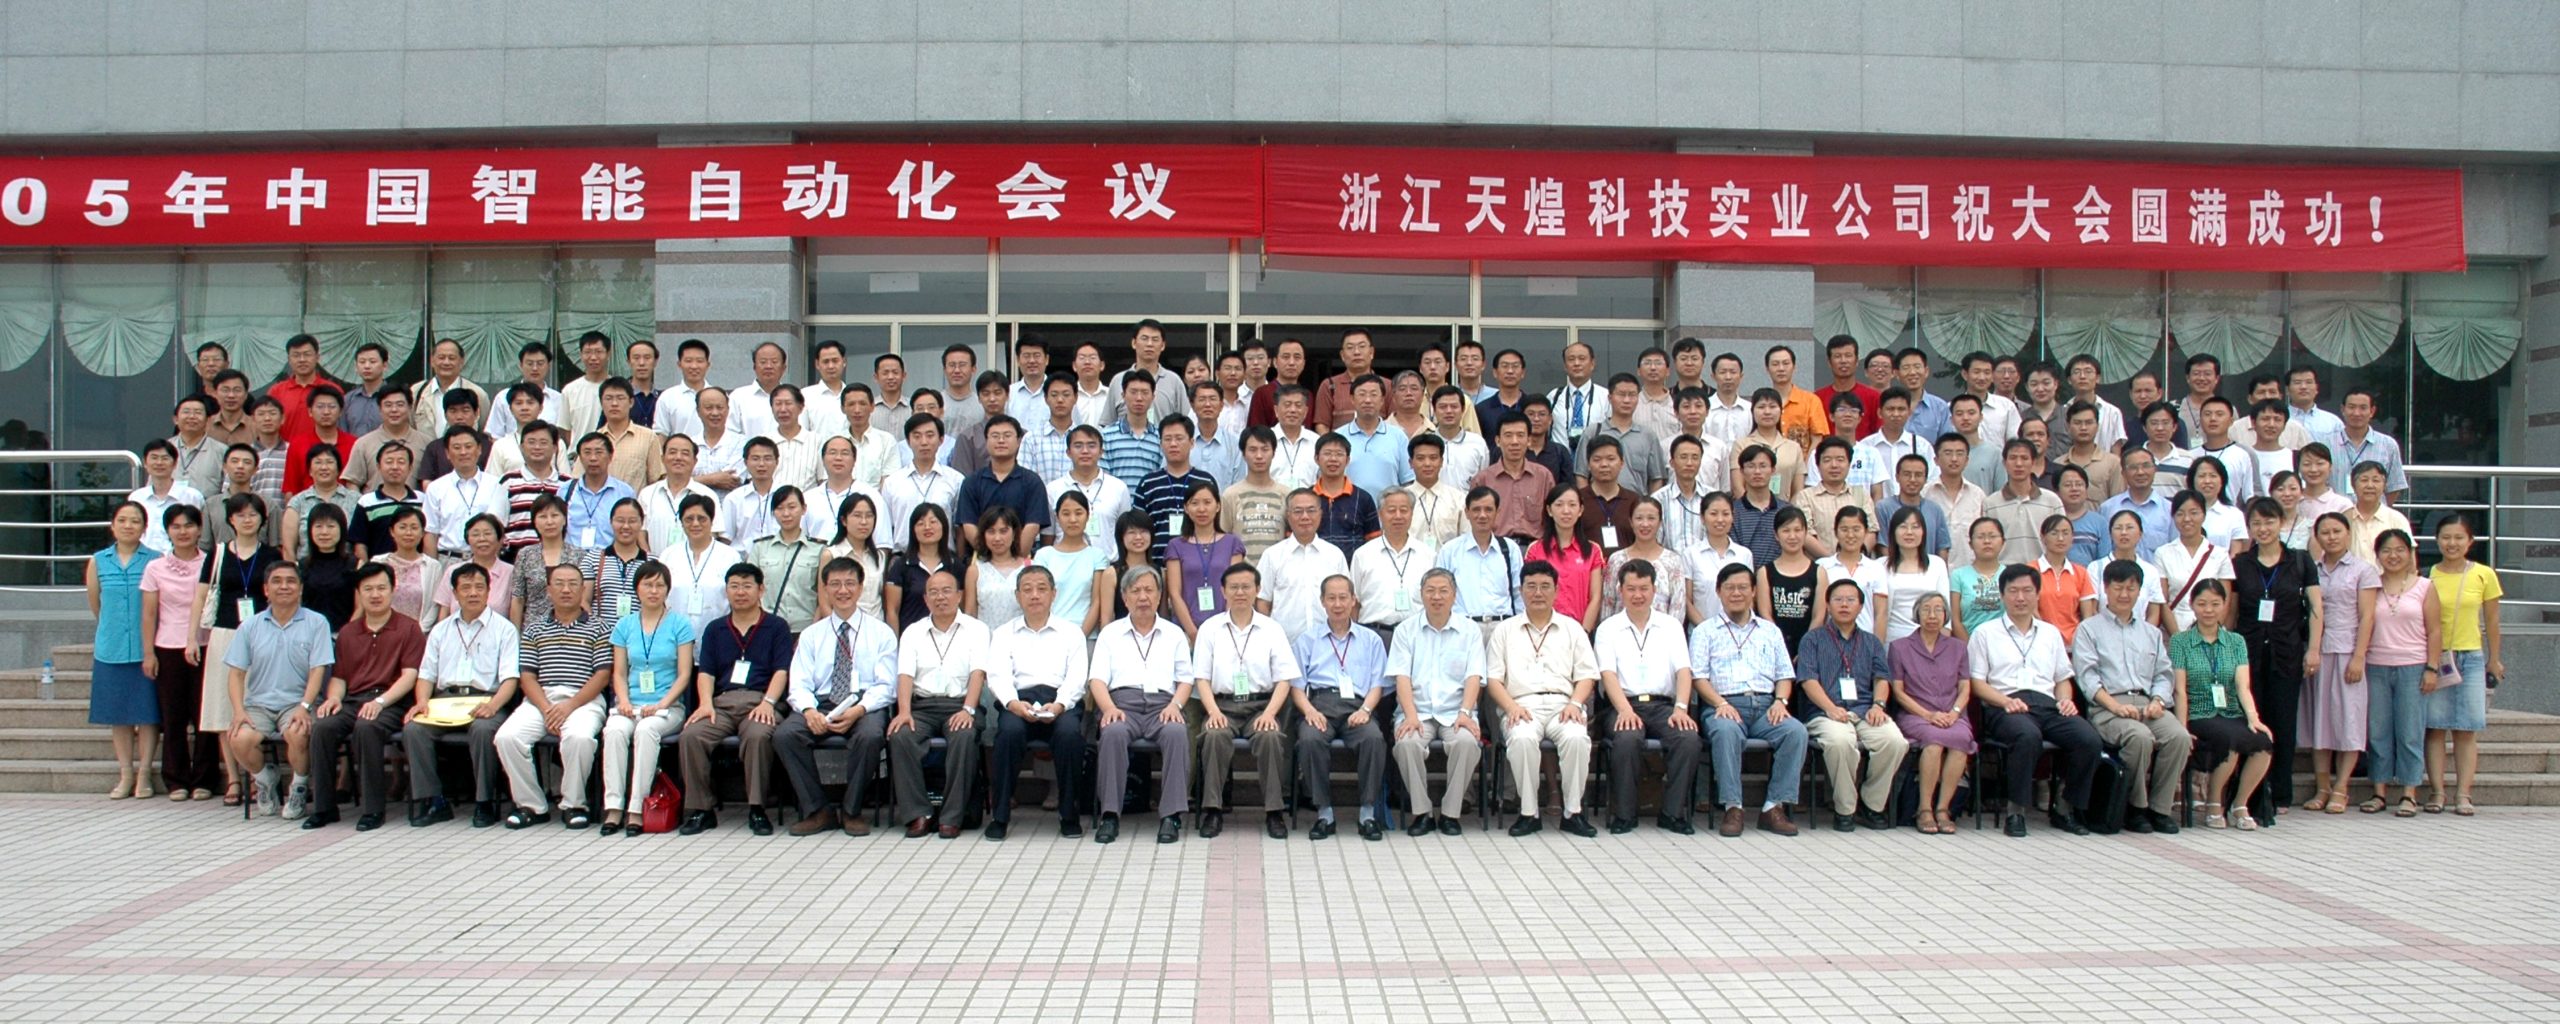 2005年中国智能自动化会议合影